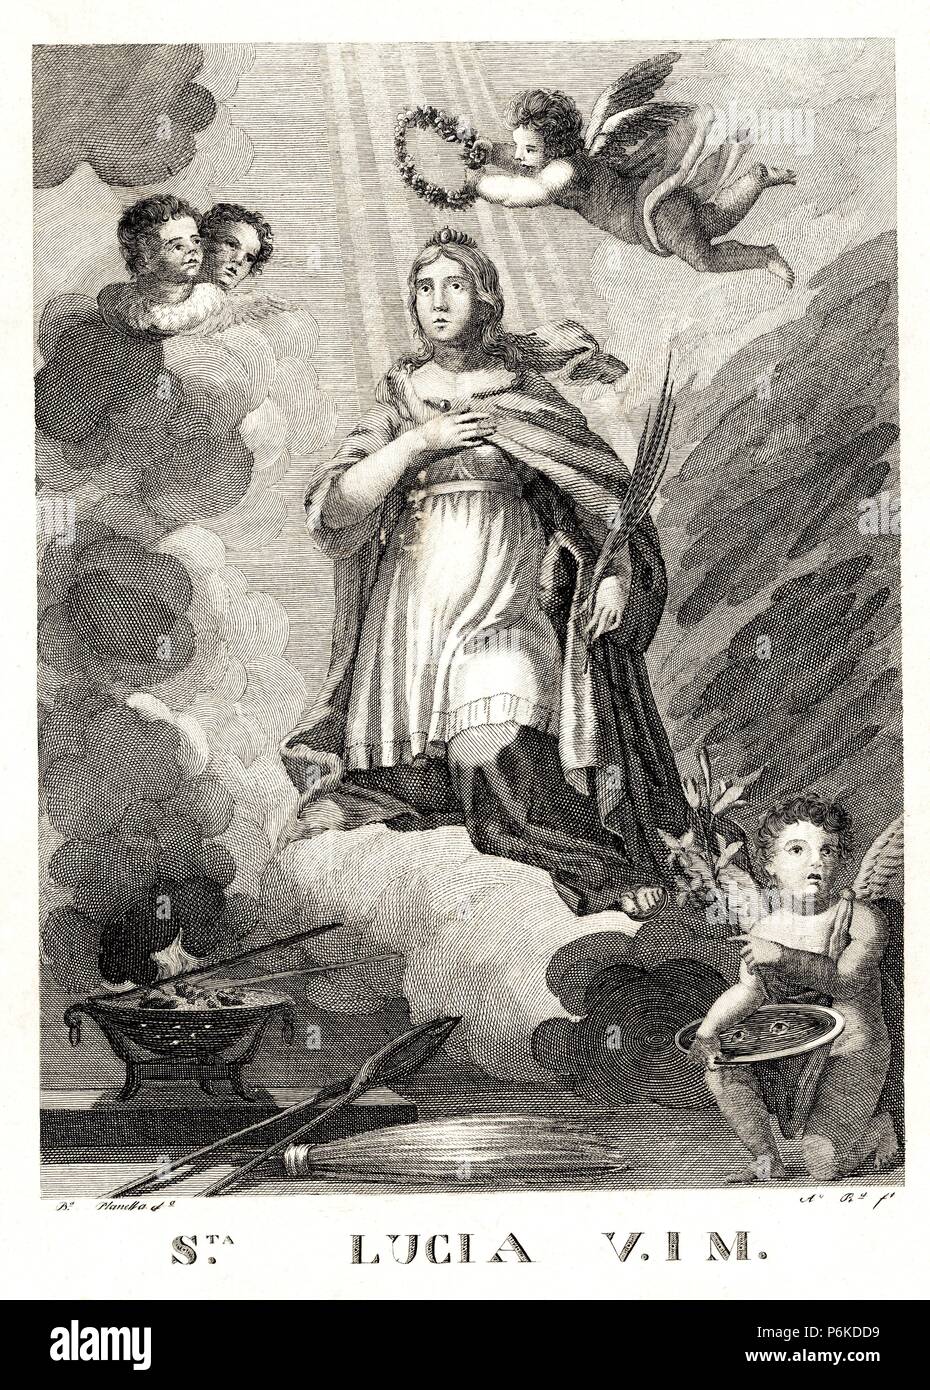 Santa Lucía de Siracusa (283-304), mártir cristiana venerada por las iglesias católica y ortodoxa; patrona de los ciegos. Grabado de 1820. Stock Photo